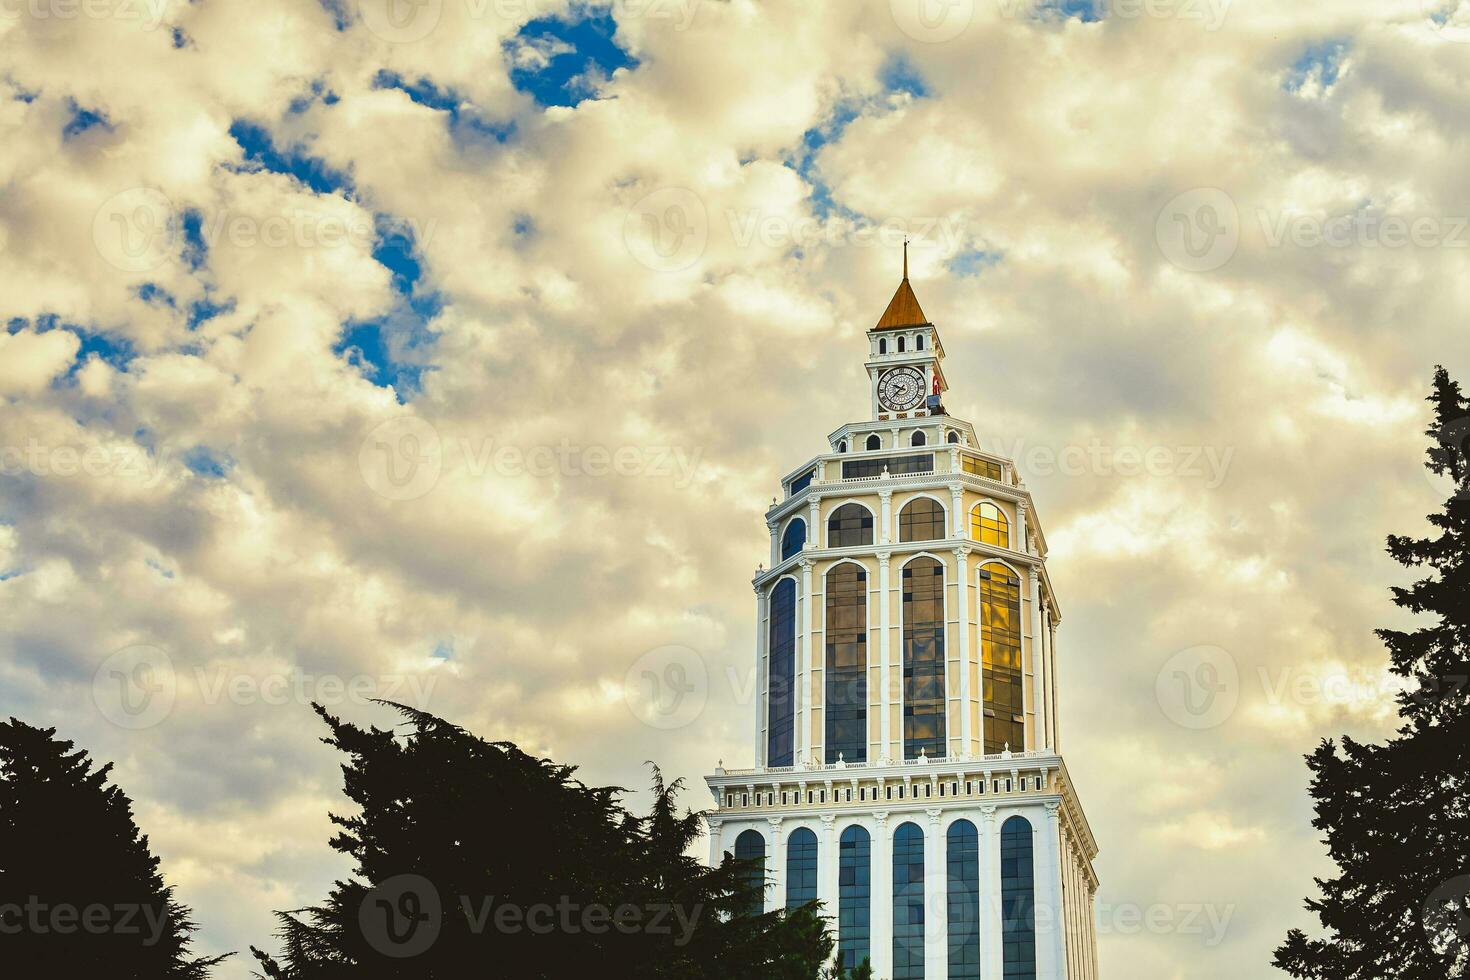 batumi, Georgia, 2021 - lapso de tiempo sheraton hotel edificio torre arquitectura con antiguo reloj en parte superior y paso nubes antecedentes. Días festivos en batumi, Georgia foto